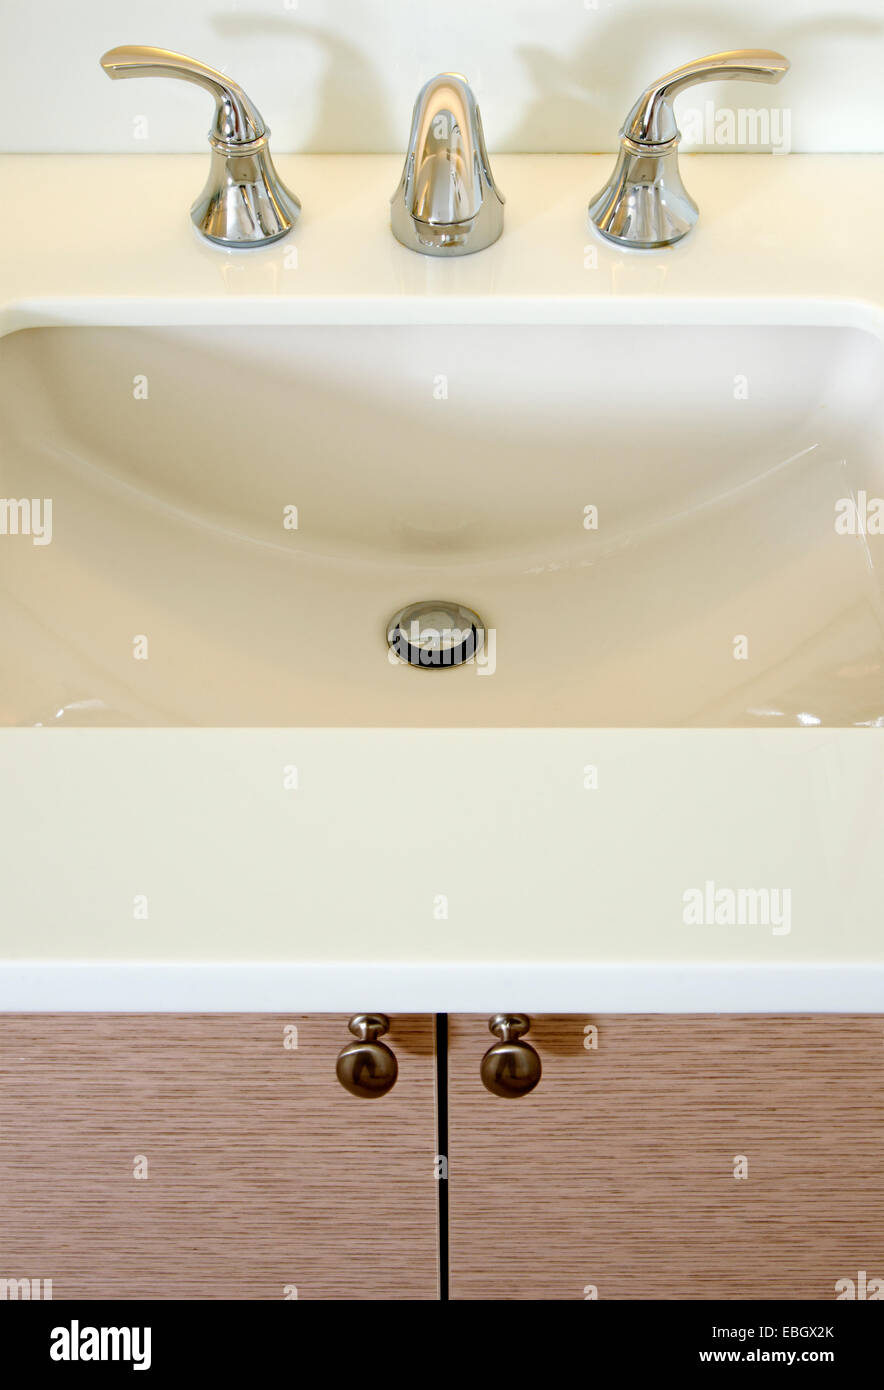 Lavabo y contador: Cerca de un lavabo, grifo cromado blanco y contador. Foto de stock